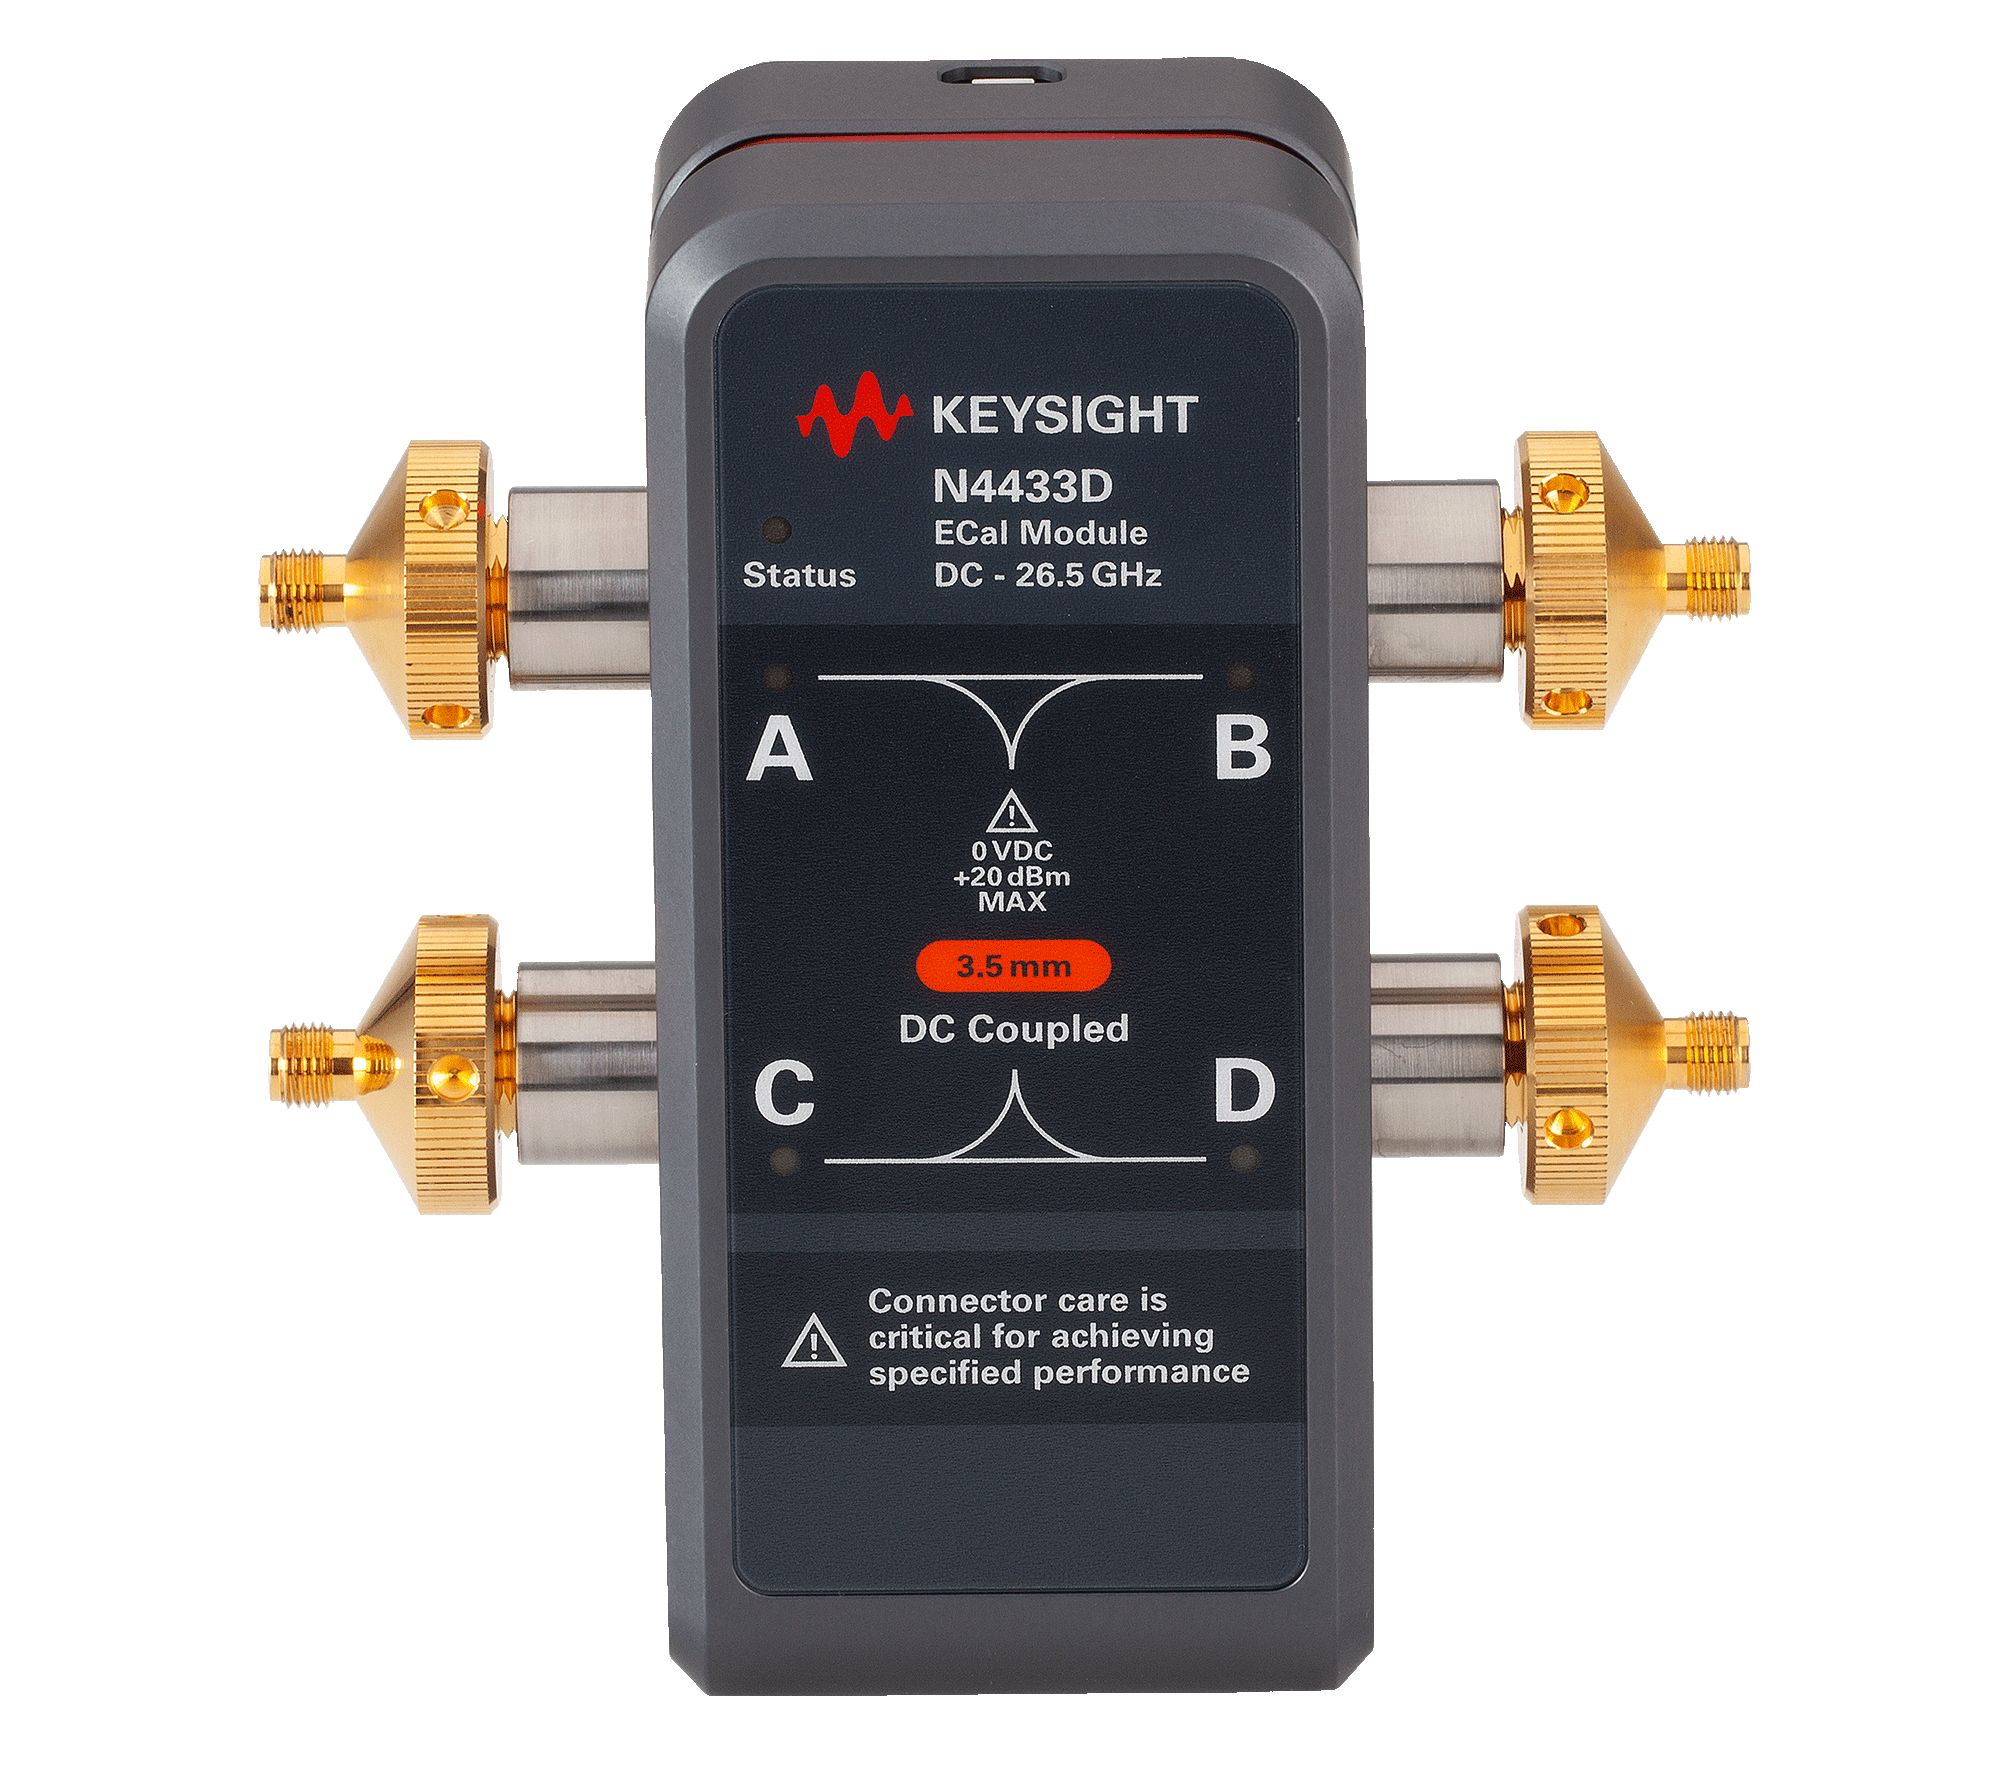 Keysight N4433D-0DC DC to 26.5 GHz